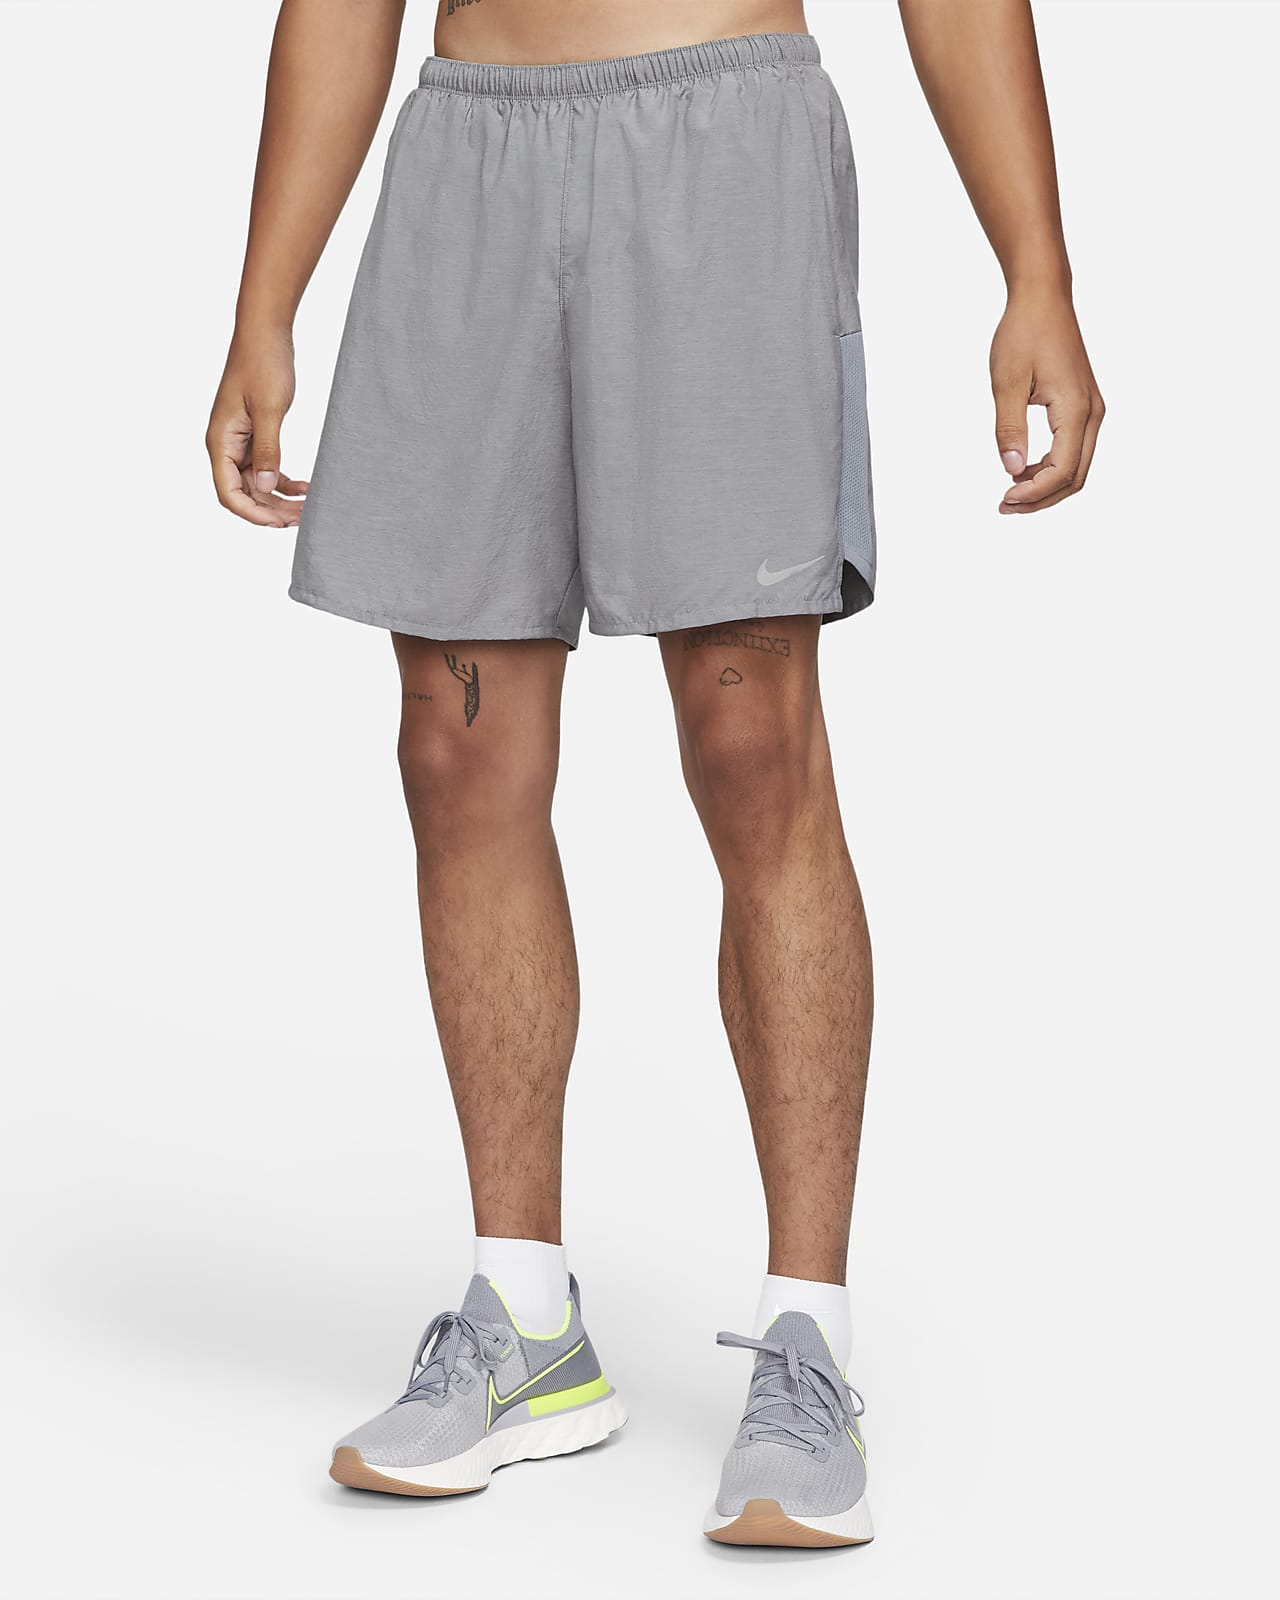 Nike Challenger 18 cm Slip Astarlı Erkek Koşu Şortu